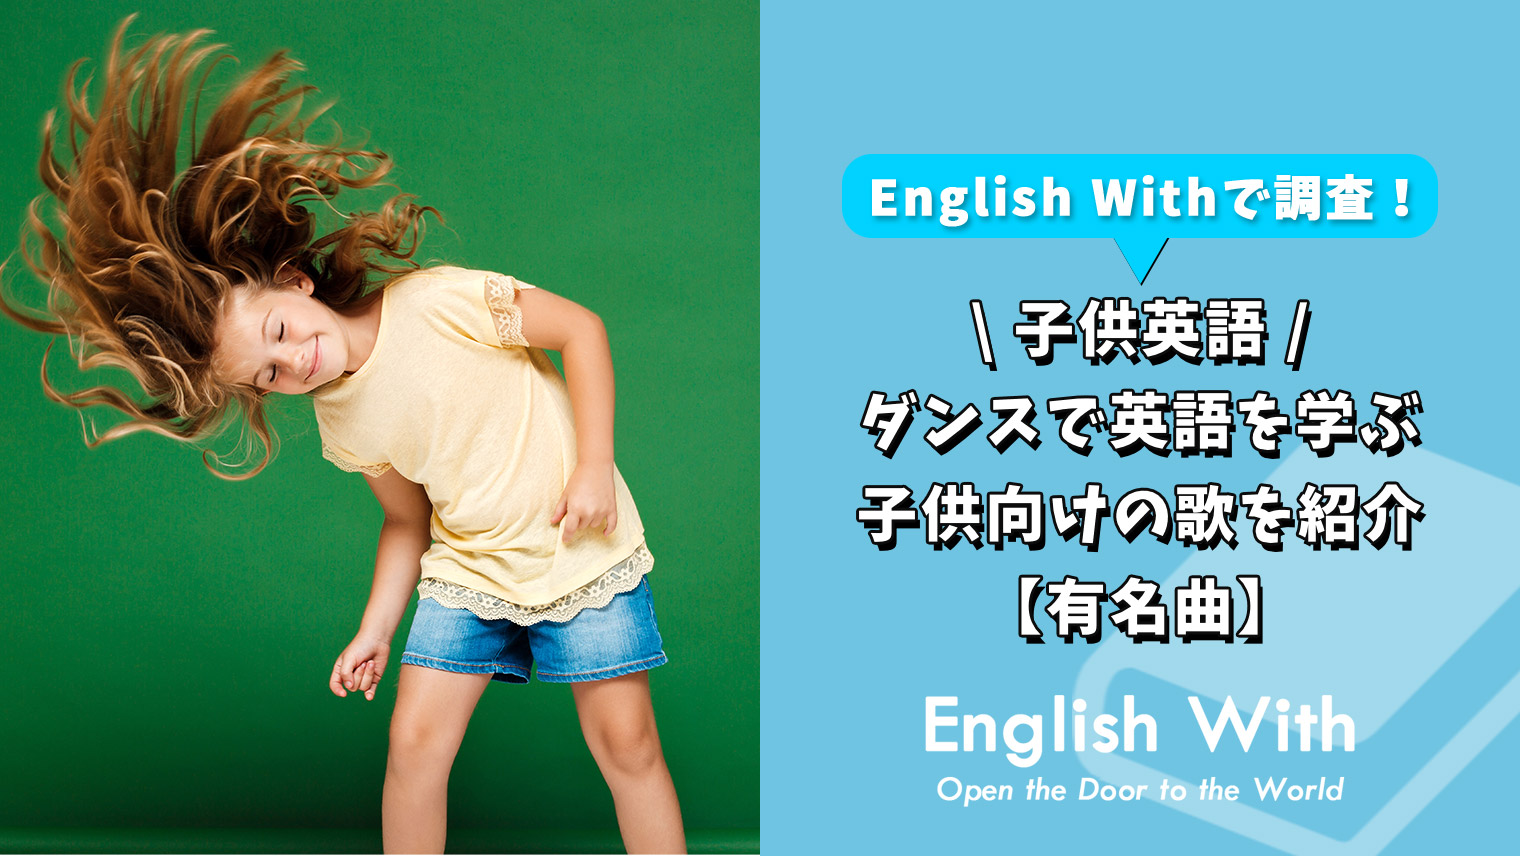 ダンスをしながら英語を覚える 子供向けの歌を紹介 有名曲 英語学習メディアenglish With